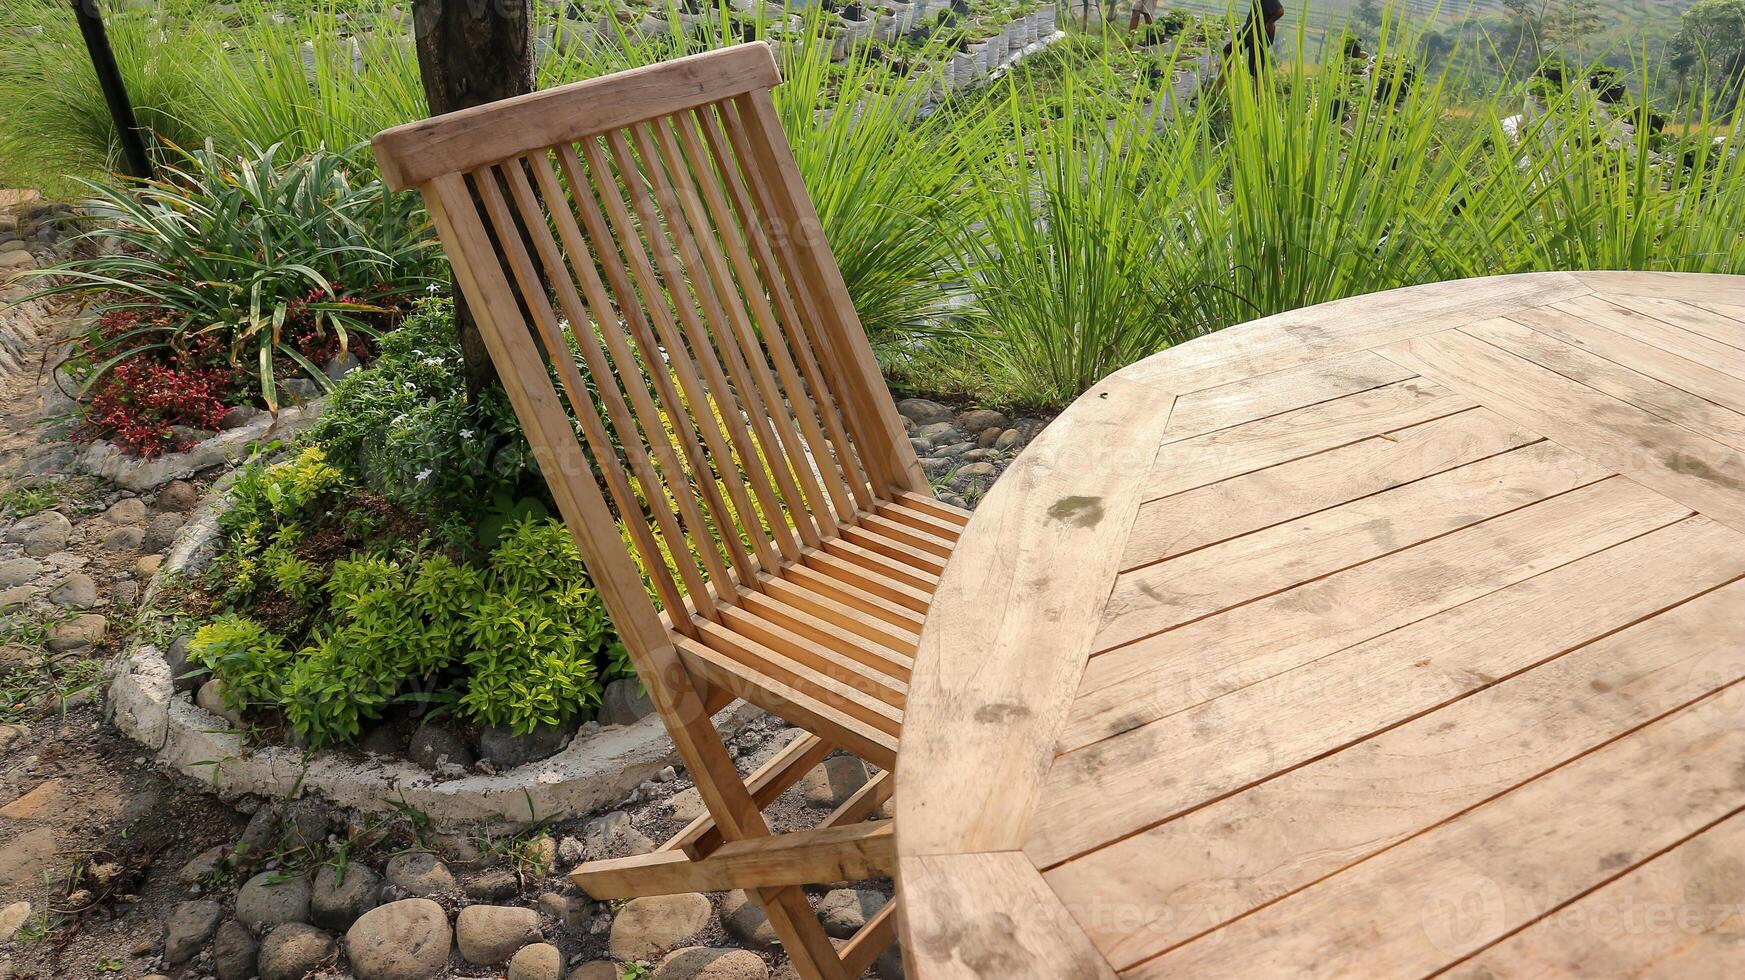 de madeira mesa, cadeiras e guarda-chuva ao ar livre dentro jardim foto